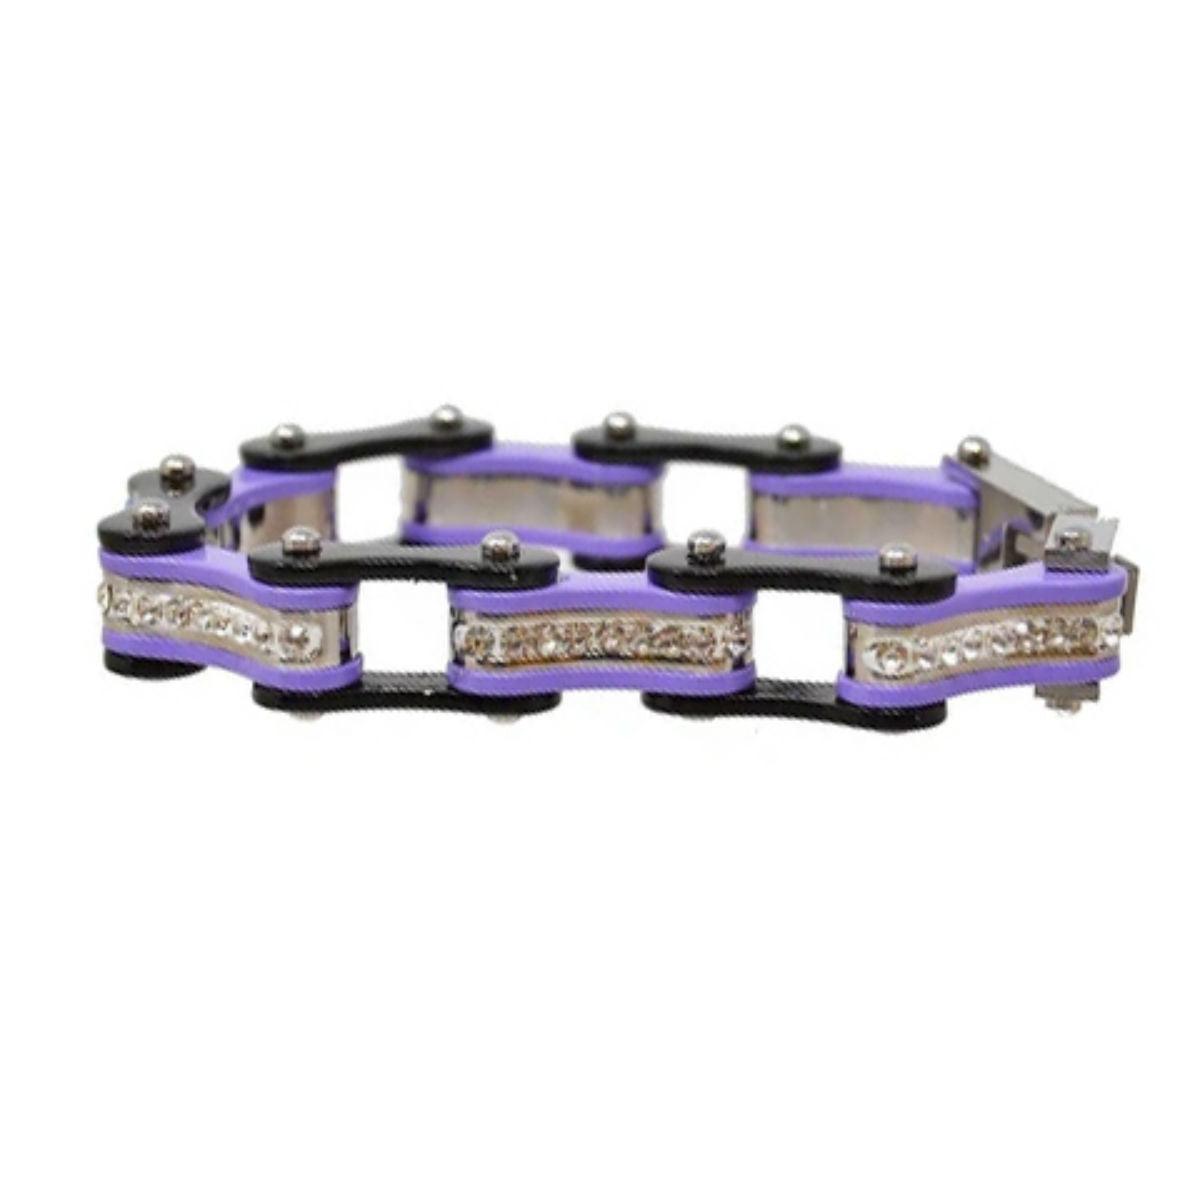 Daniel Smart Women's 316L Stainless Steel Bike Chain Bracelet w/ White Crystal Centers, Black/Purple - American Legend Rider